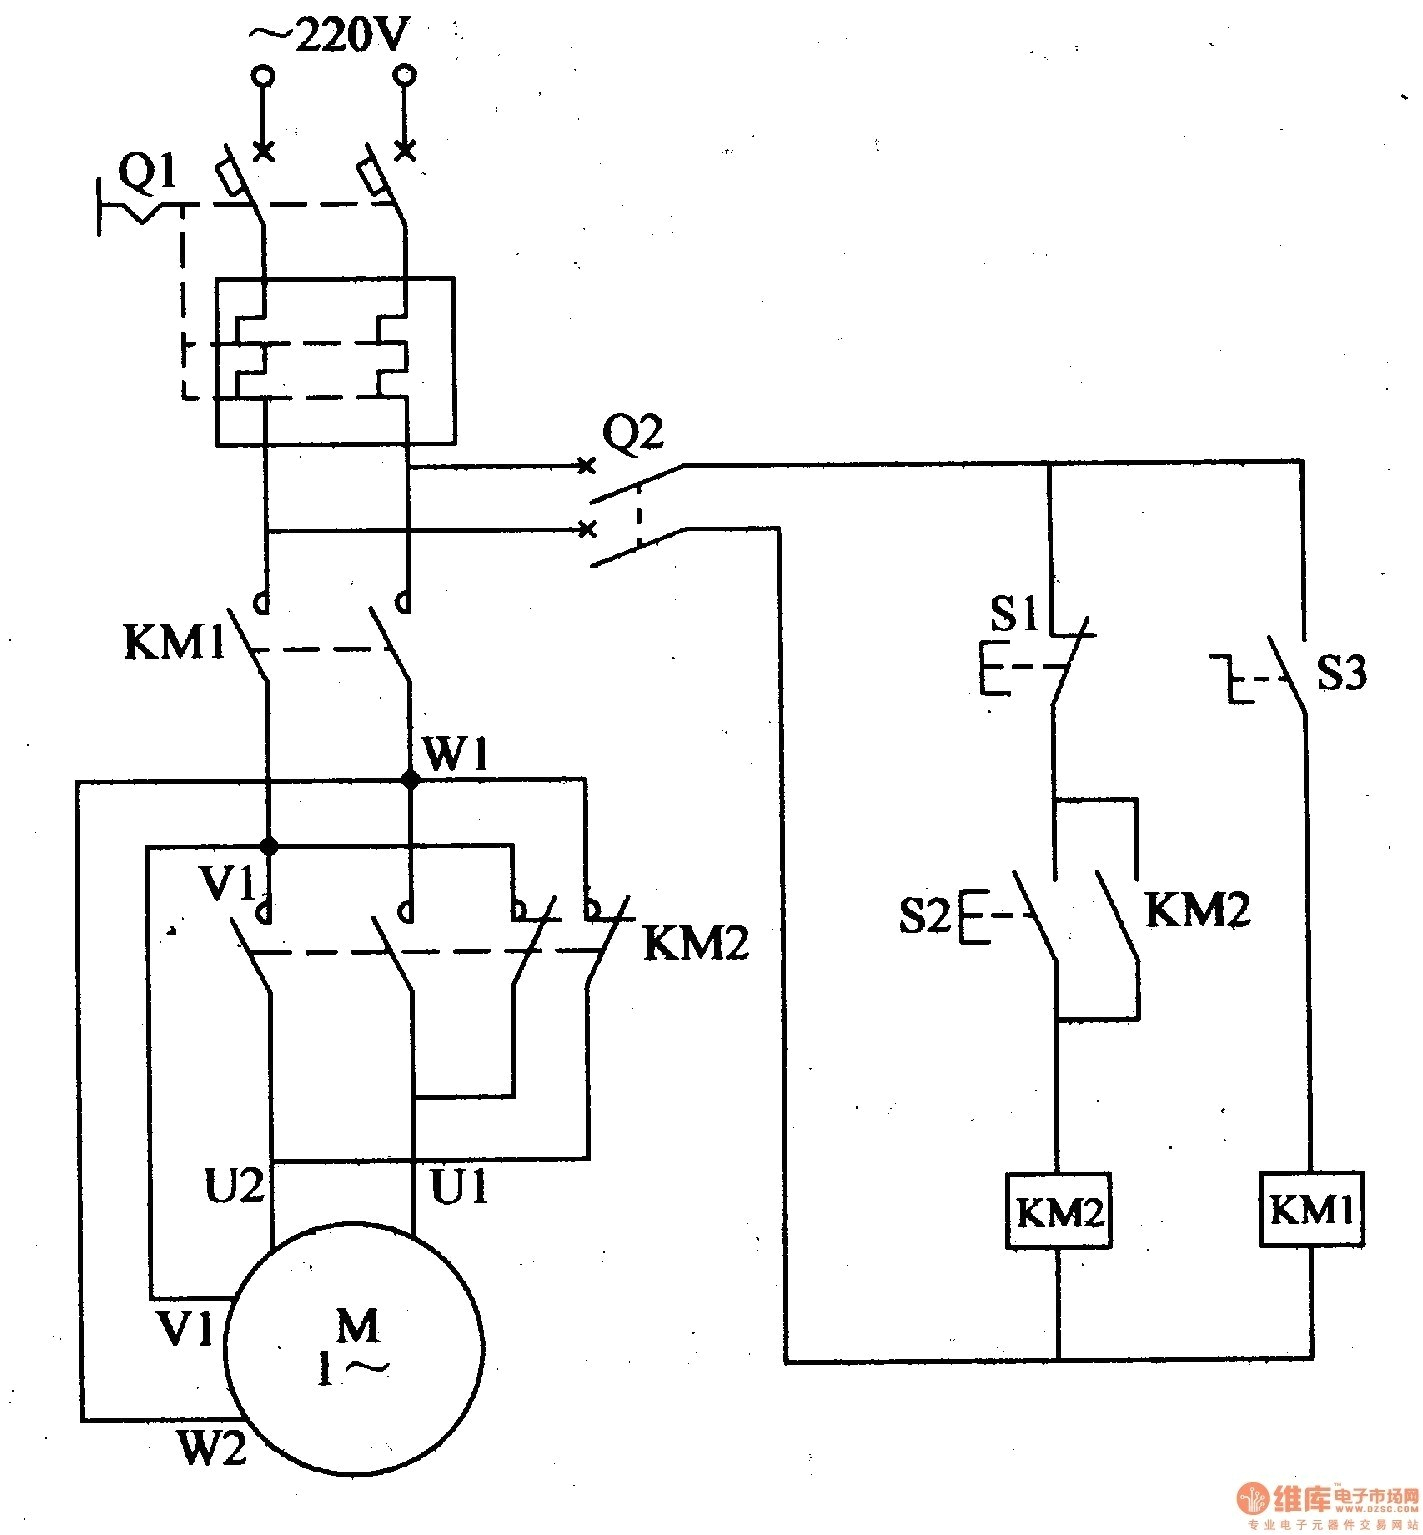 3 phase motor starter wiring diagram